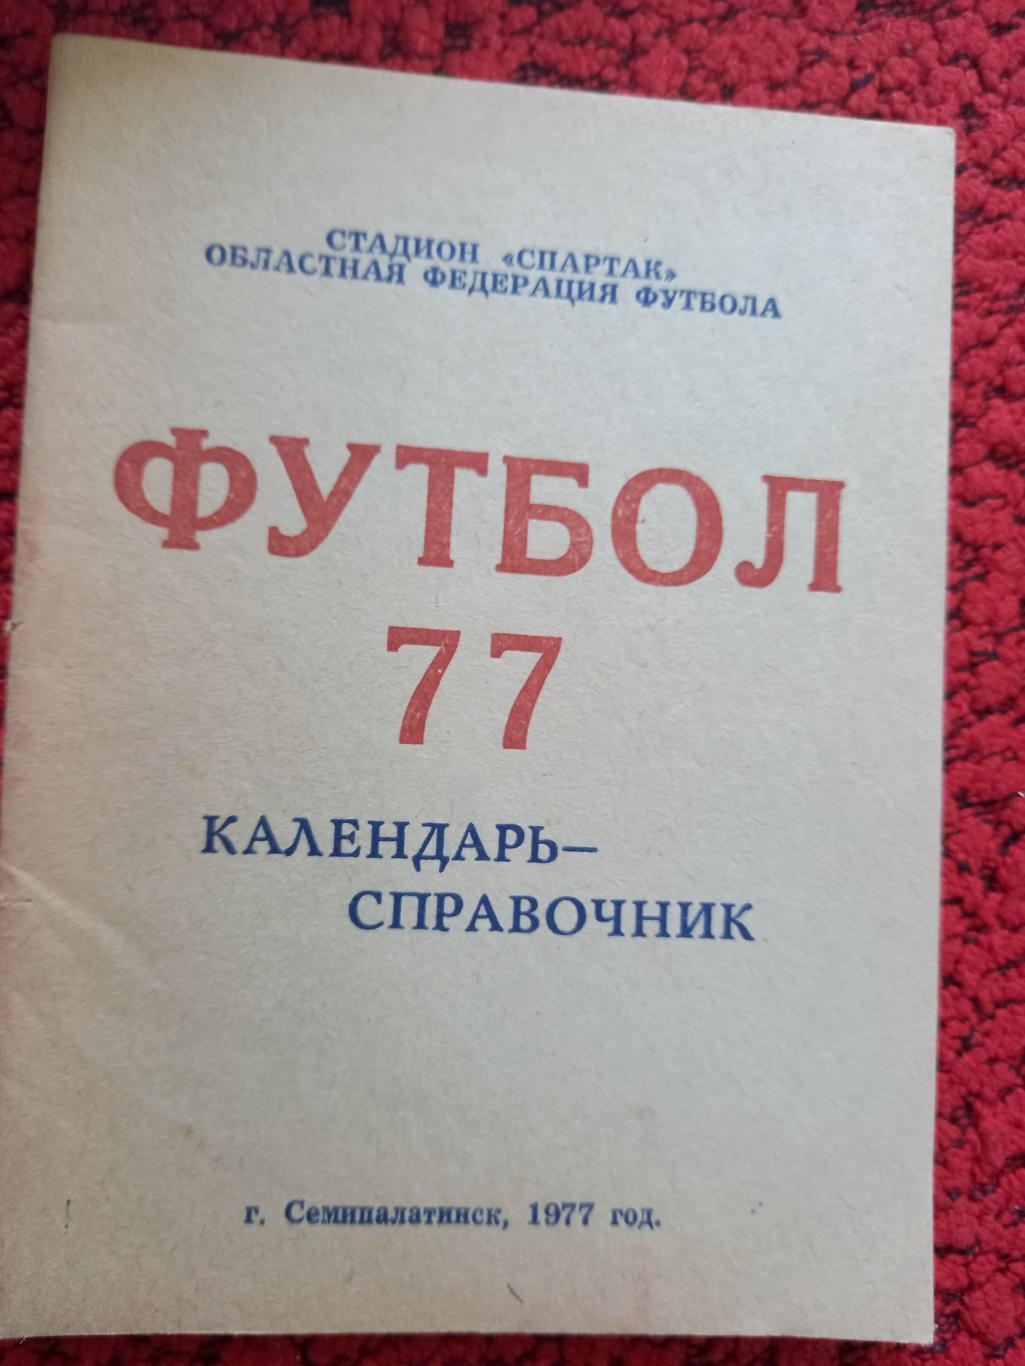 Календарь - справочник Семипалатинск 1977г